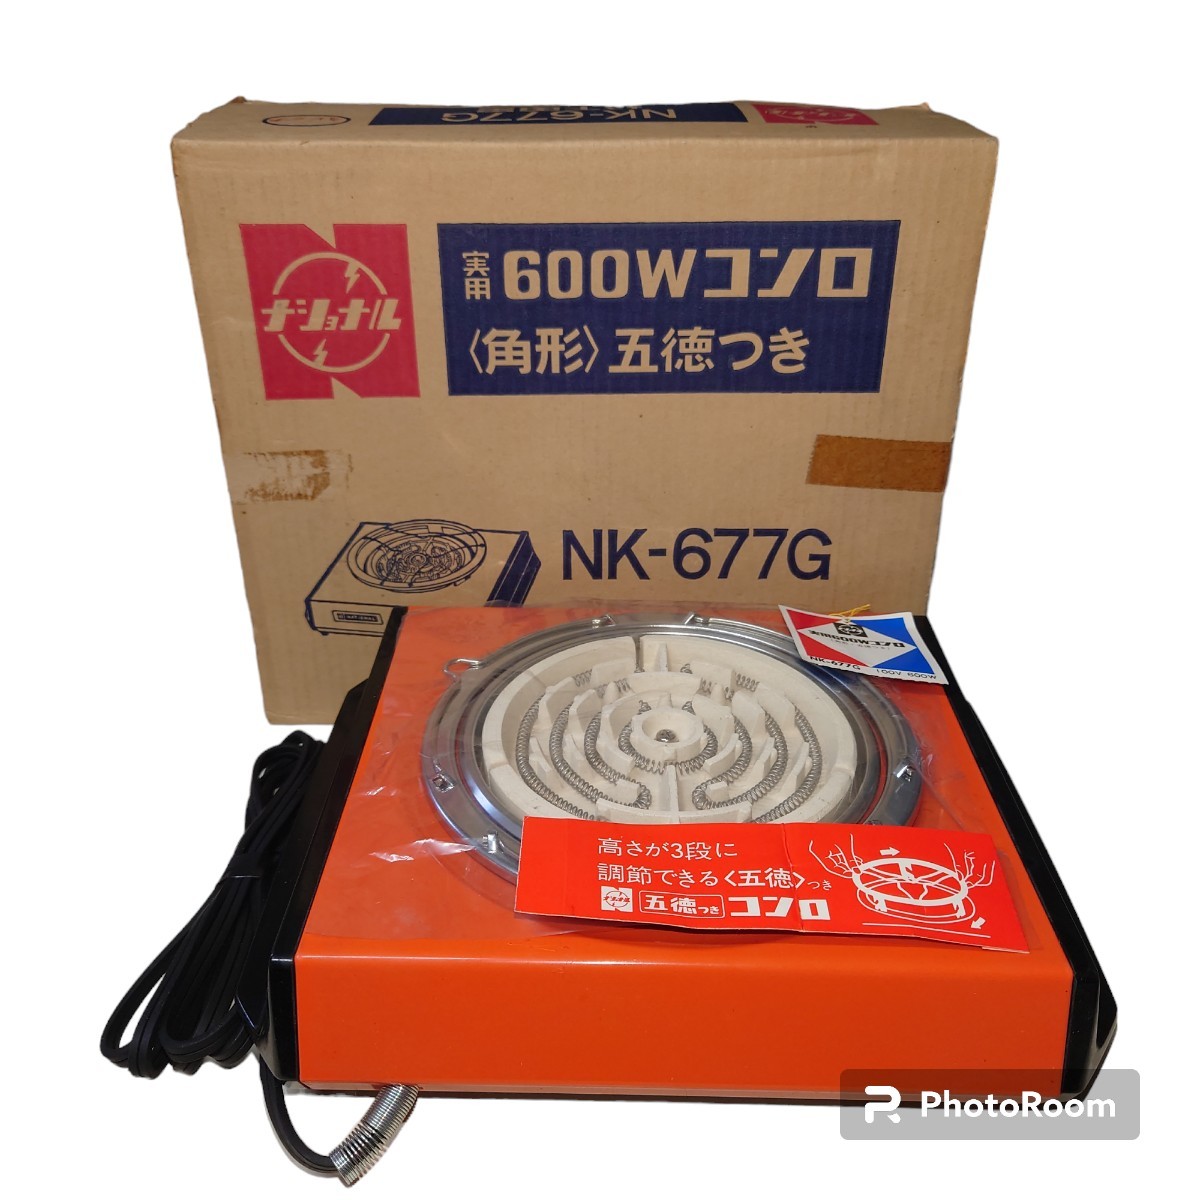 【未使用】 ナショナル 電気コンロ NK-677G 実用 600w 角形 五徳付き 昭和レトロ アンティーク コレクションの画像1